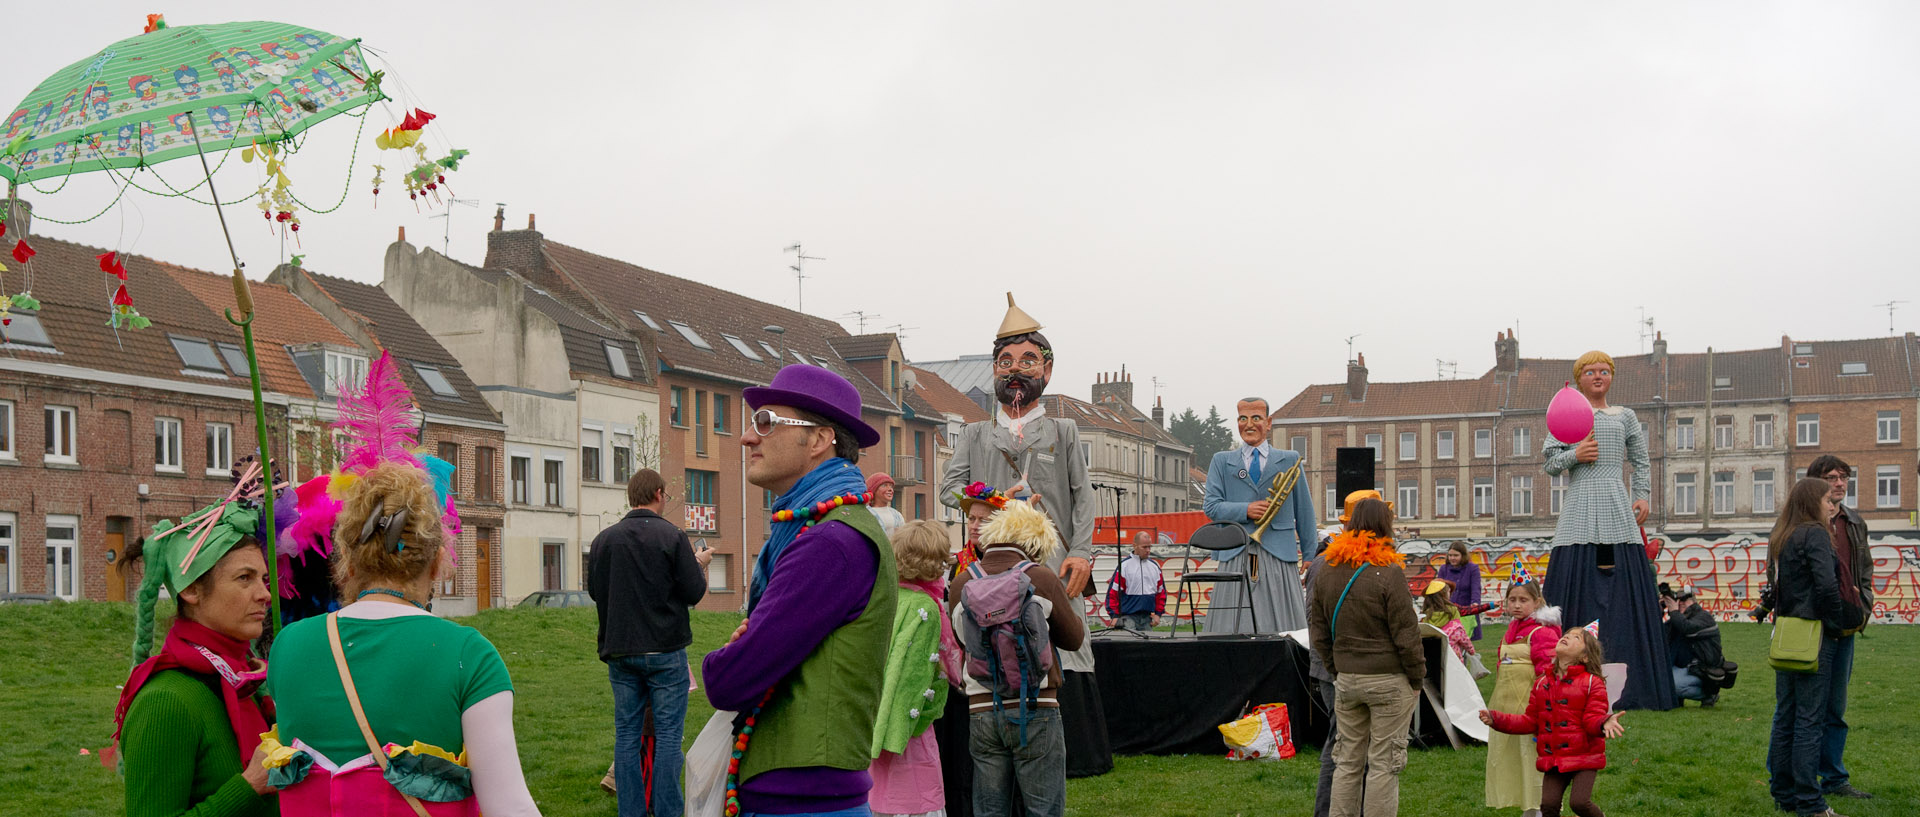 Le carnaval de Wazemmes, Maison Folie Wazemmes, à Lille.